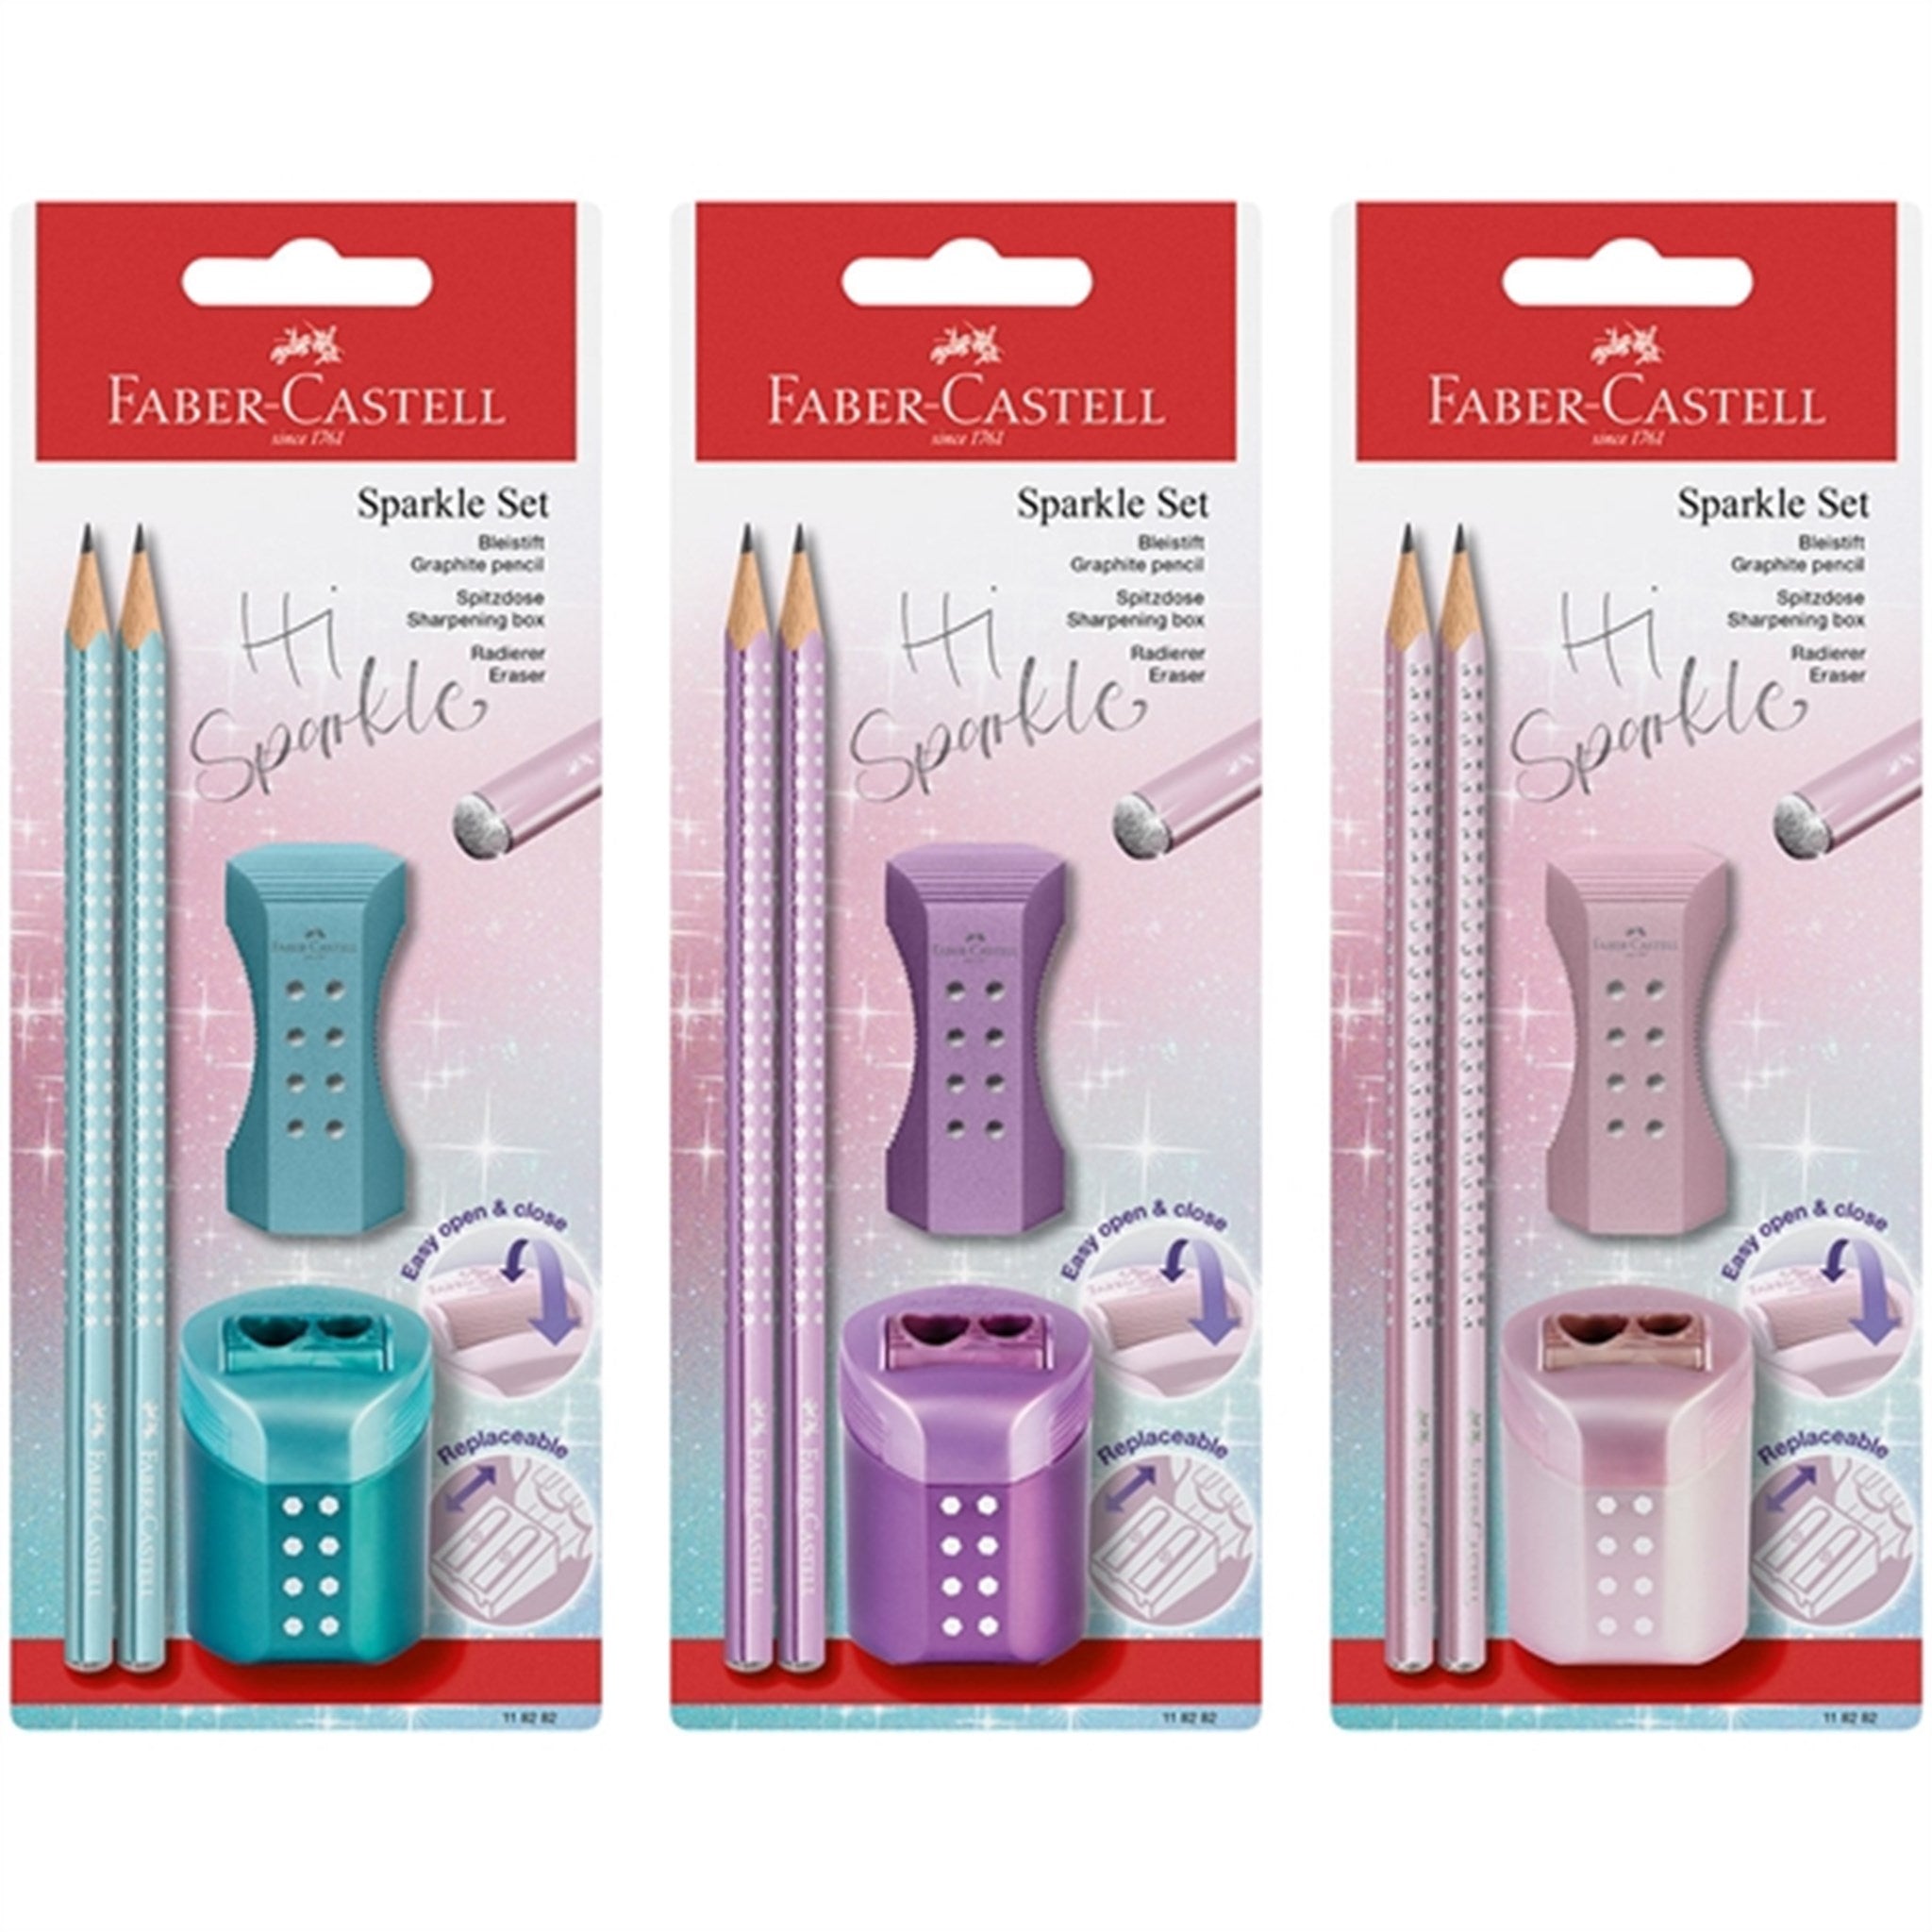 Faber-Castell Sparkle 2 Pennor, Suddgummi, Pennvässare - Lila 2